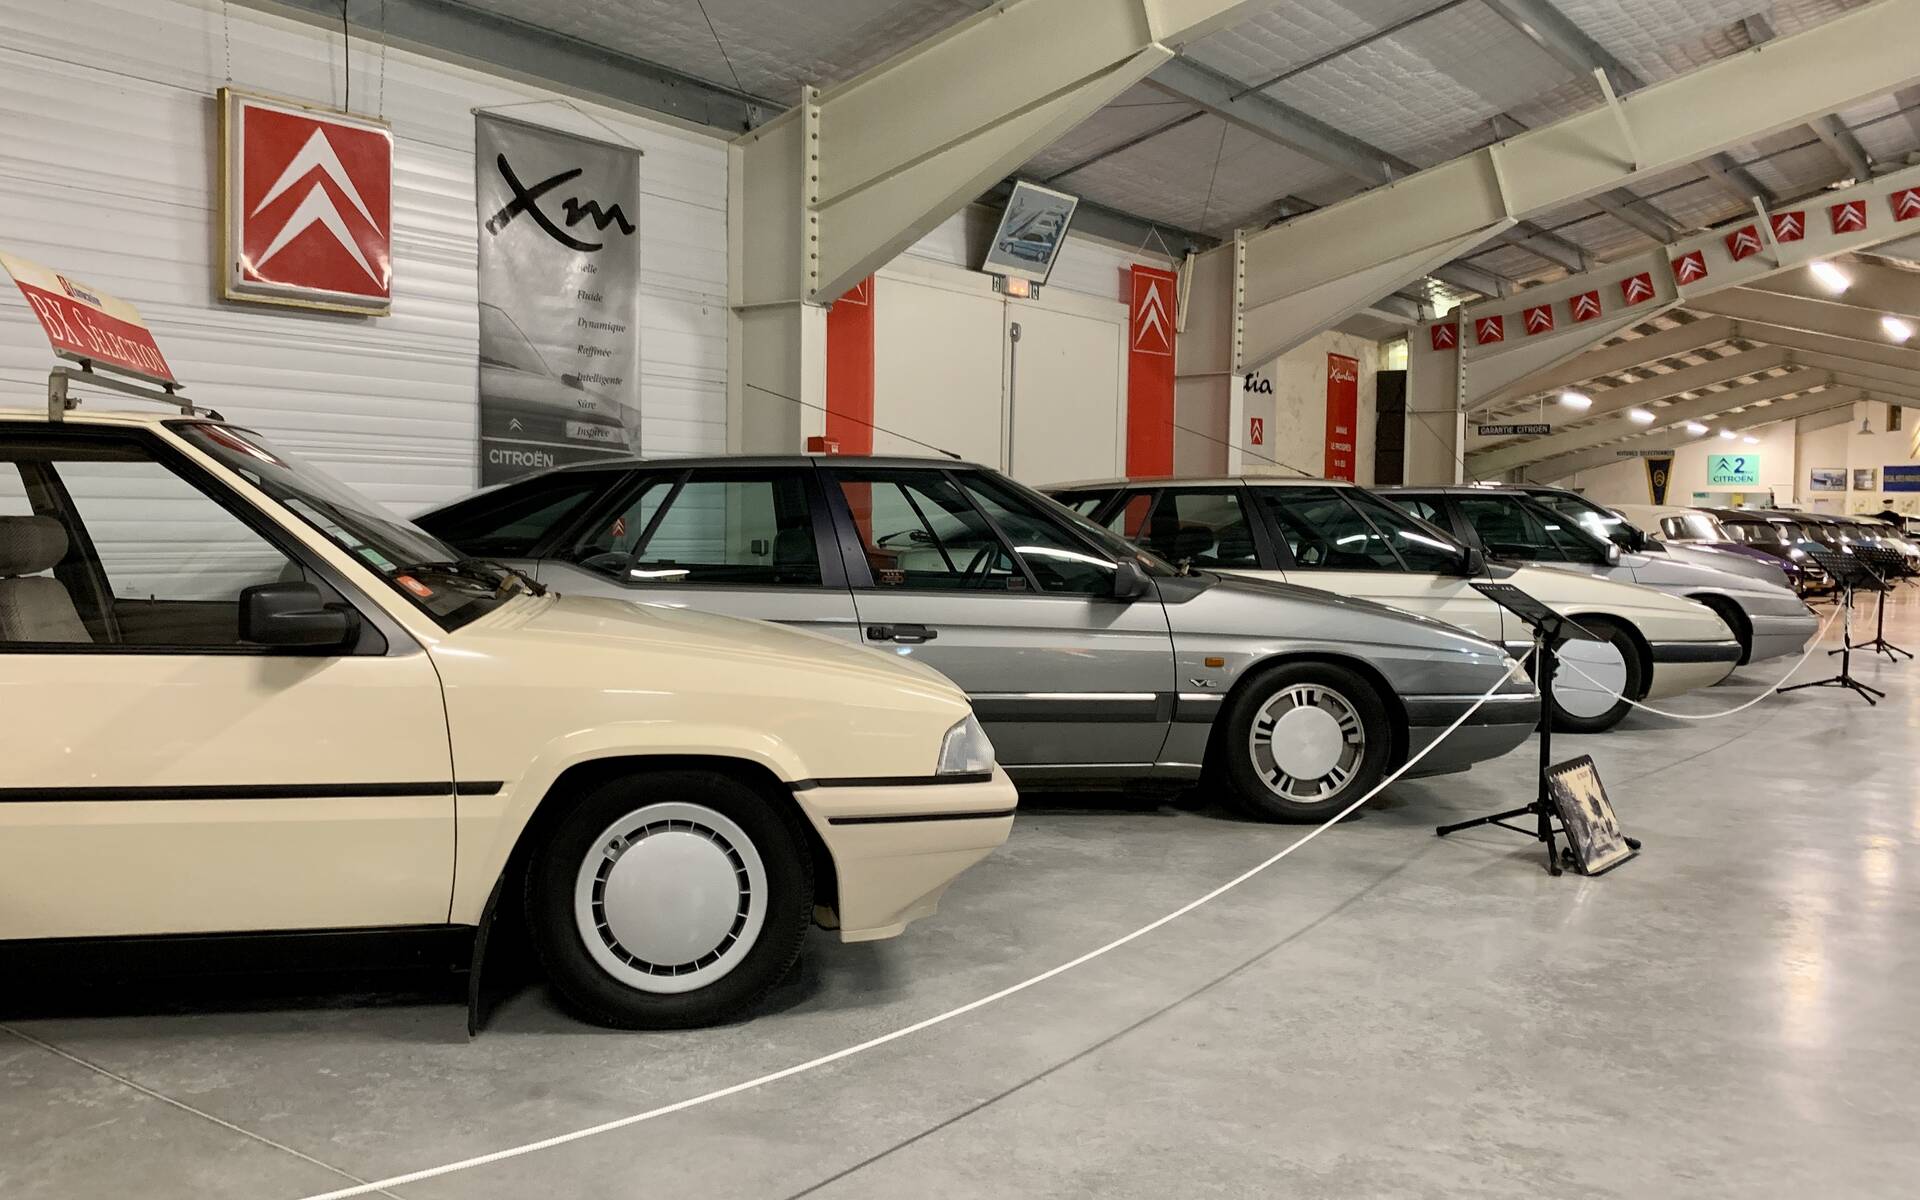 Photos: plus de 100 Citroën d'exception réunies dans un musée en France 543100-photos-plus-de-100-citroen-d-exception-reunies-dans-un-musee-en-france